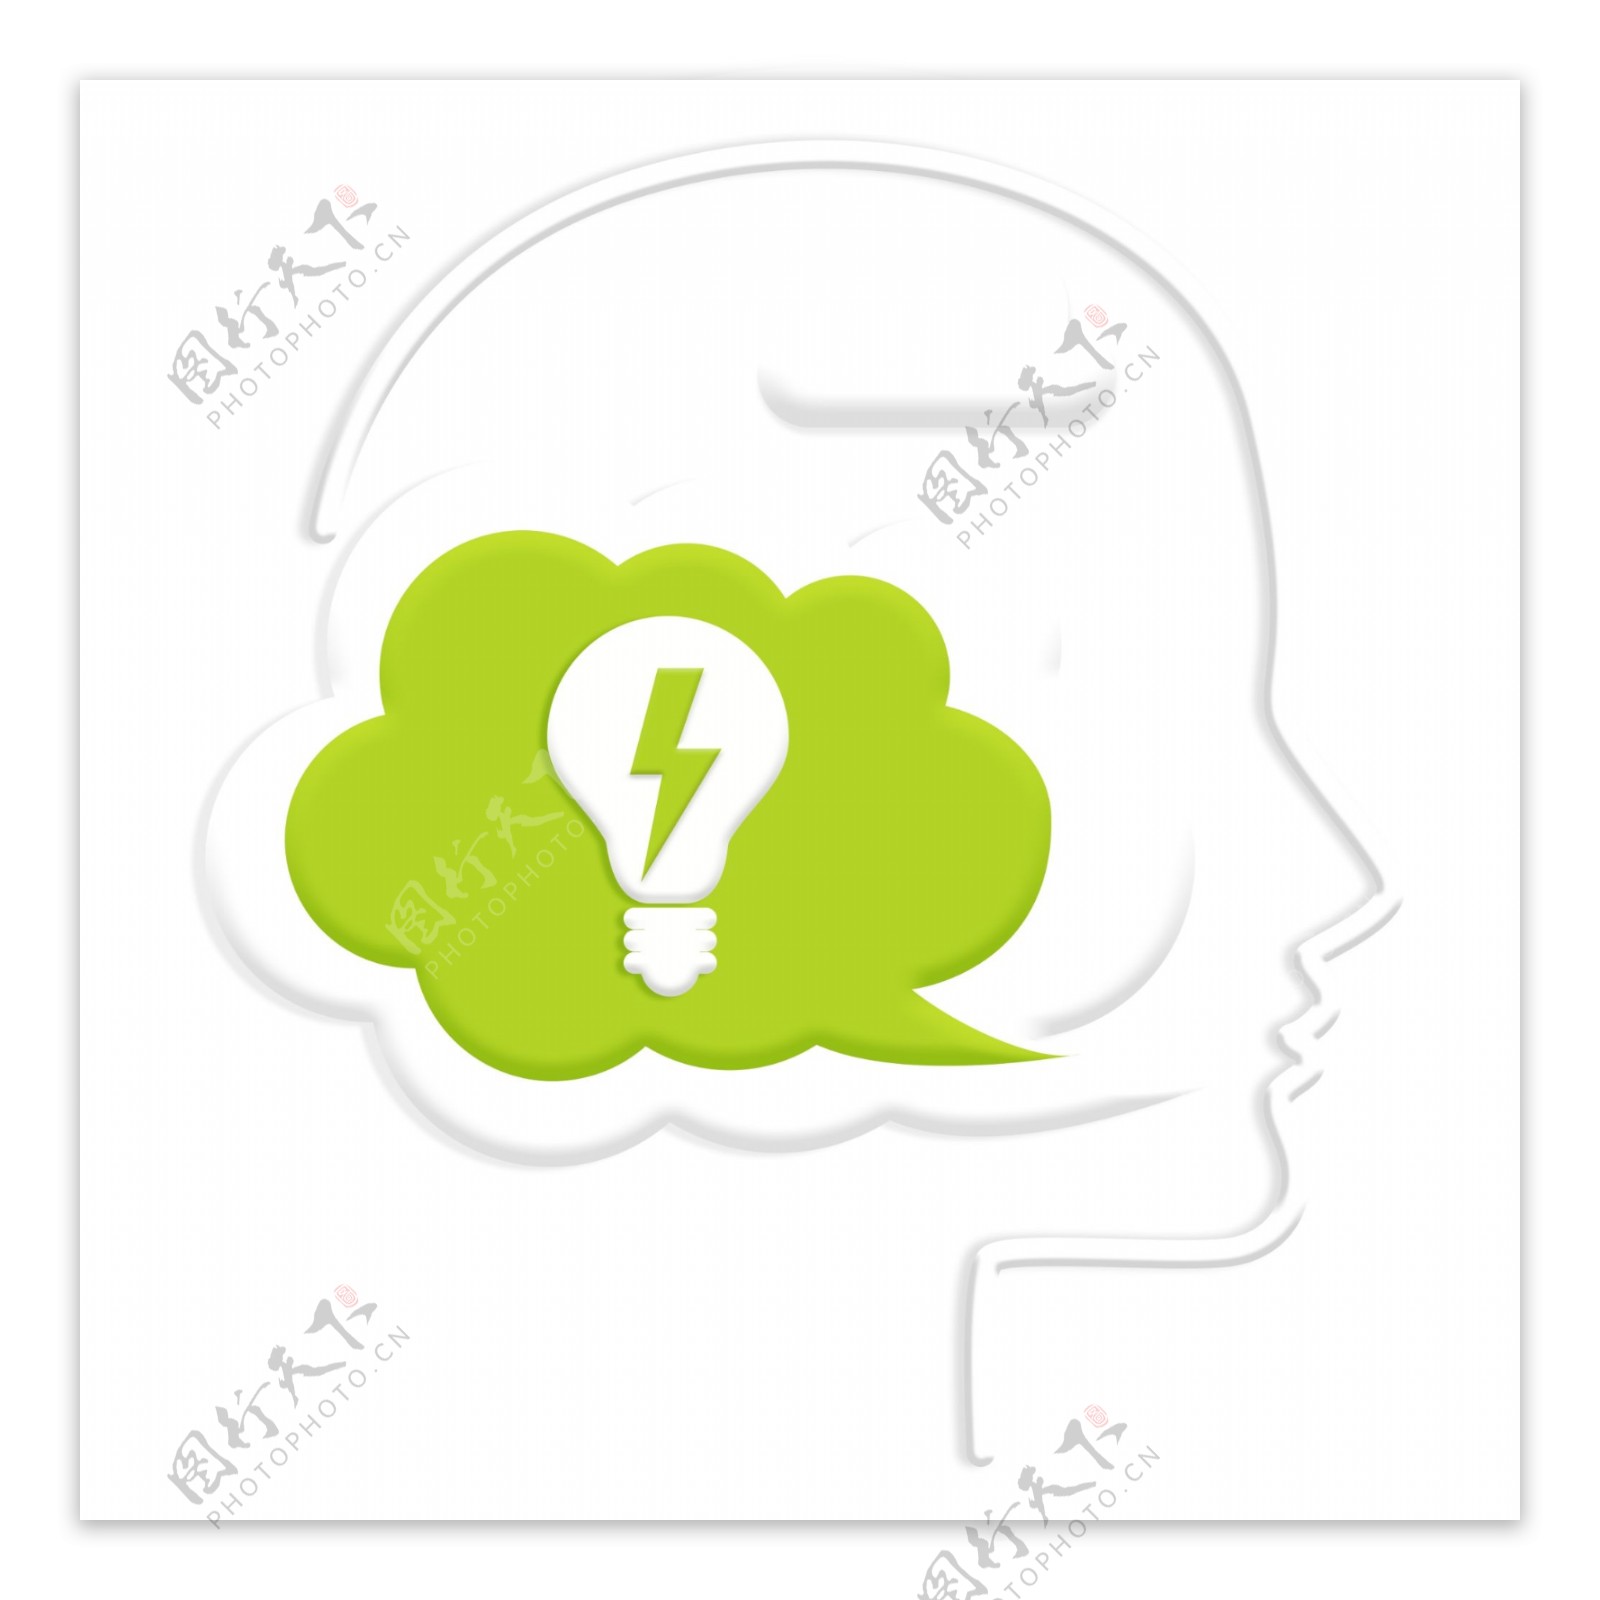 思考气泡思维人脑抽象泡泡系列之绿色灯泡PNG素材